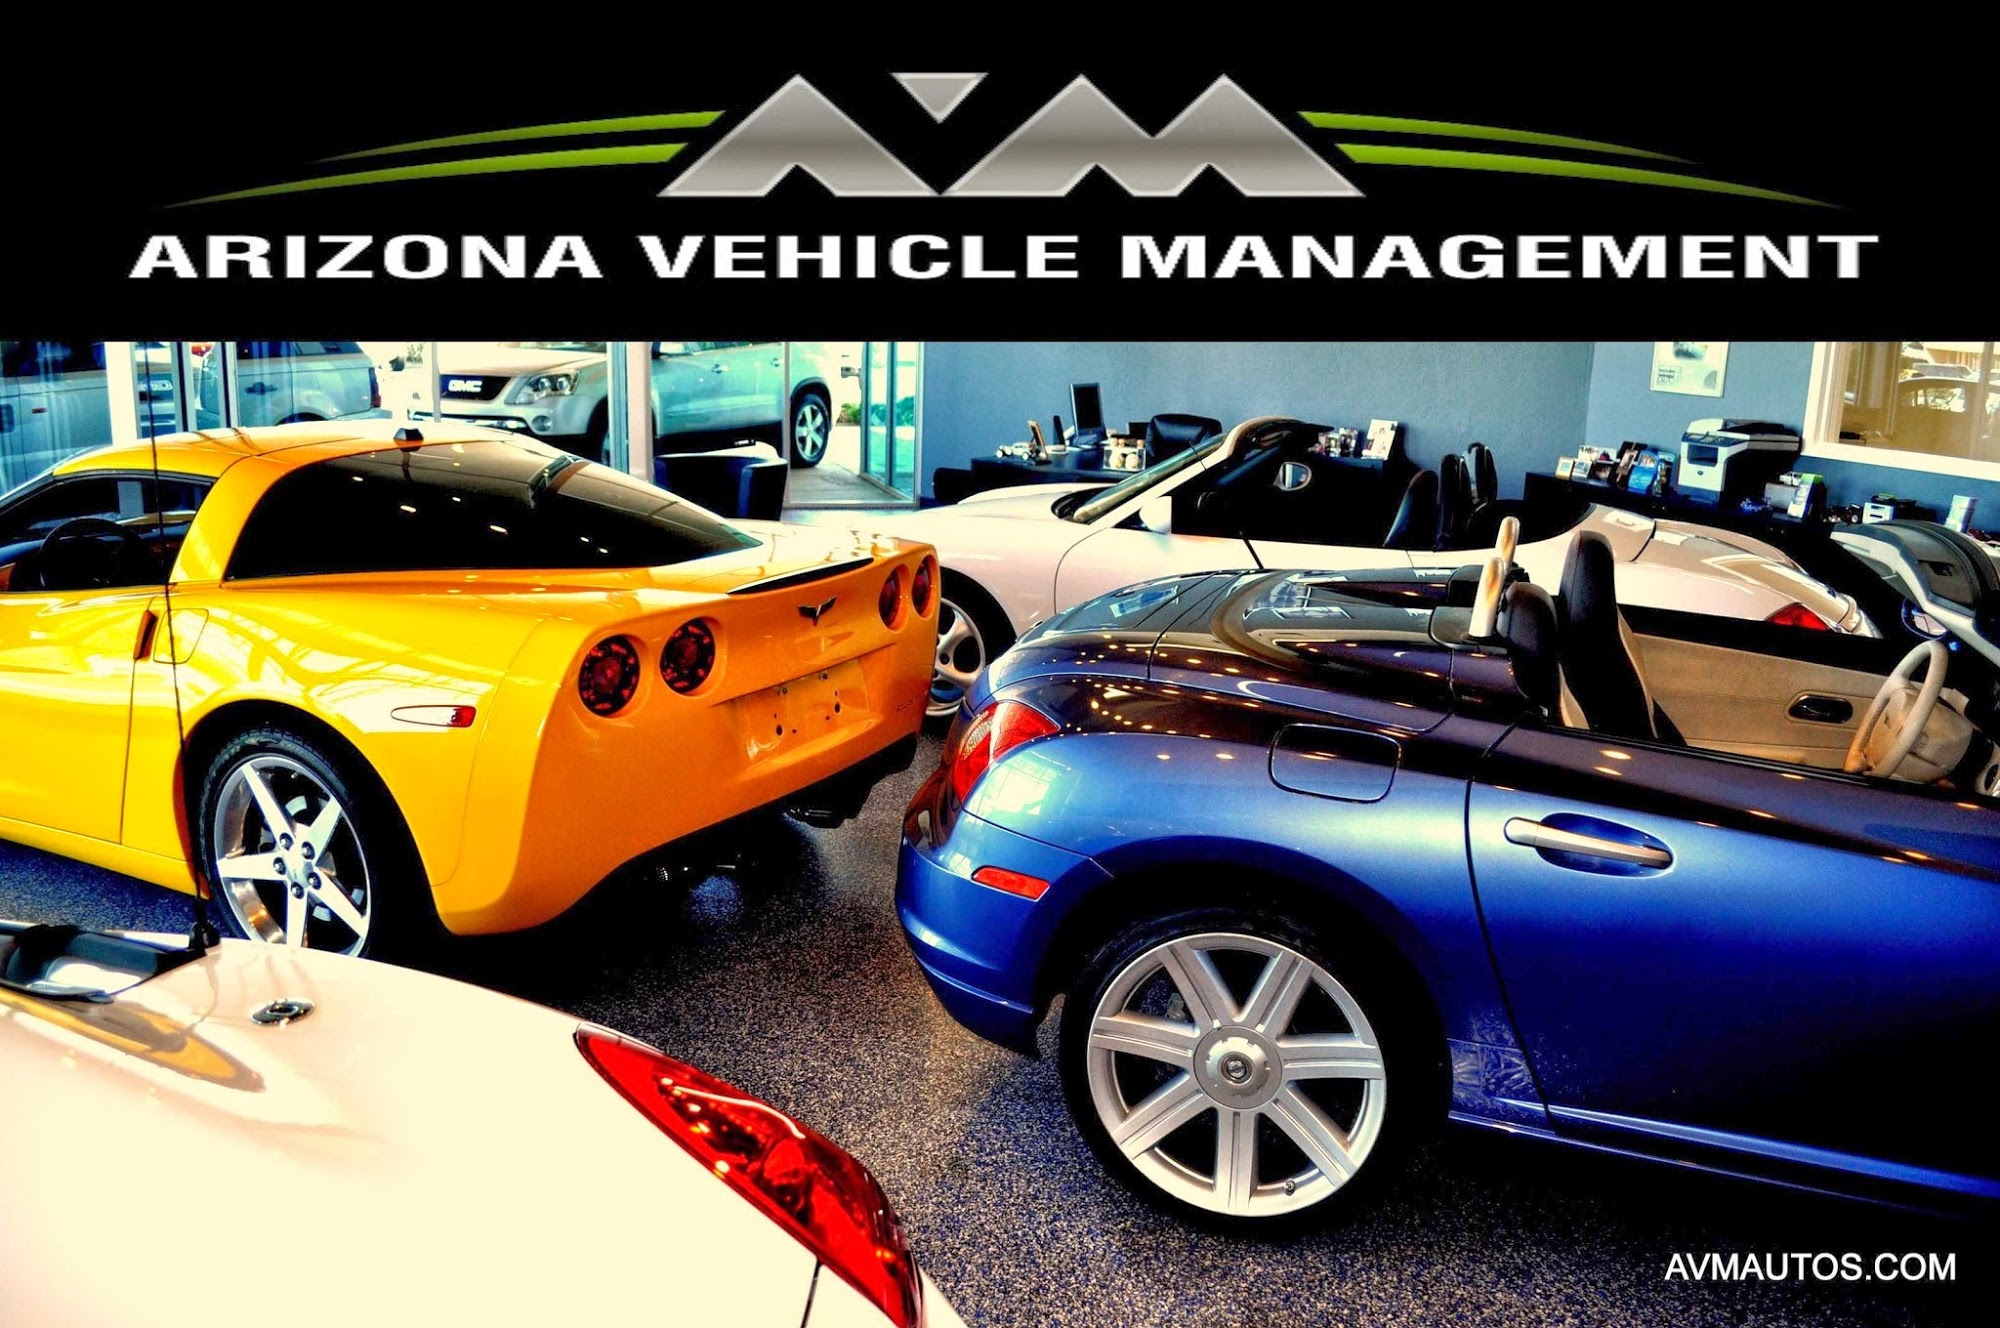 Arizona Vehicle Management